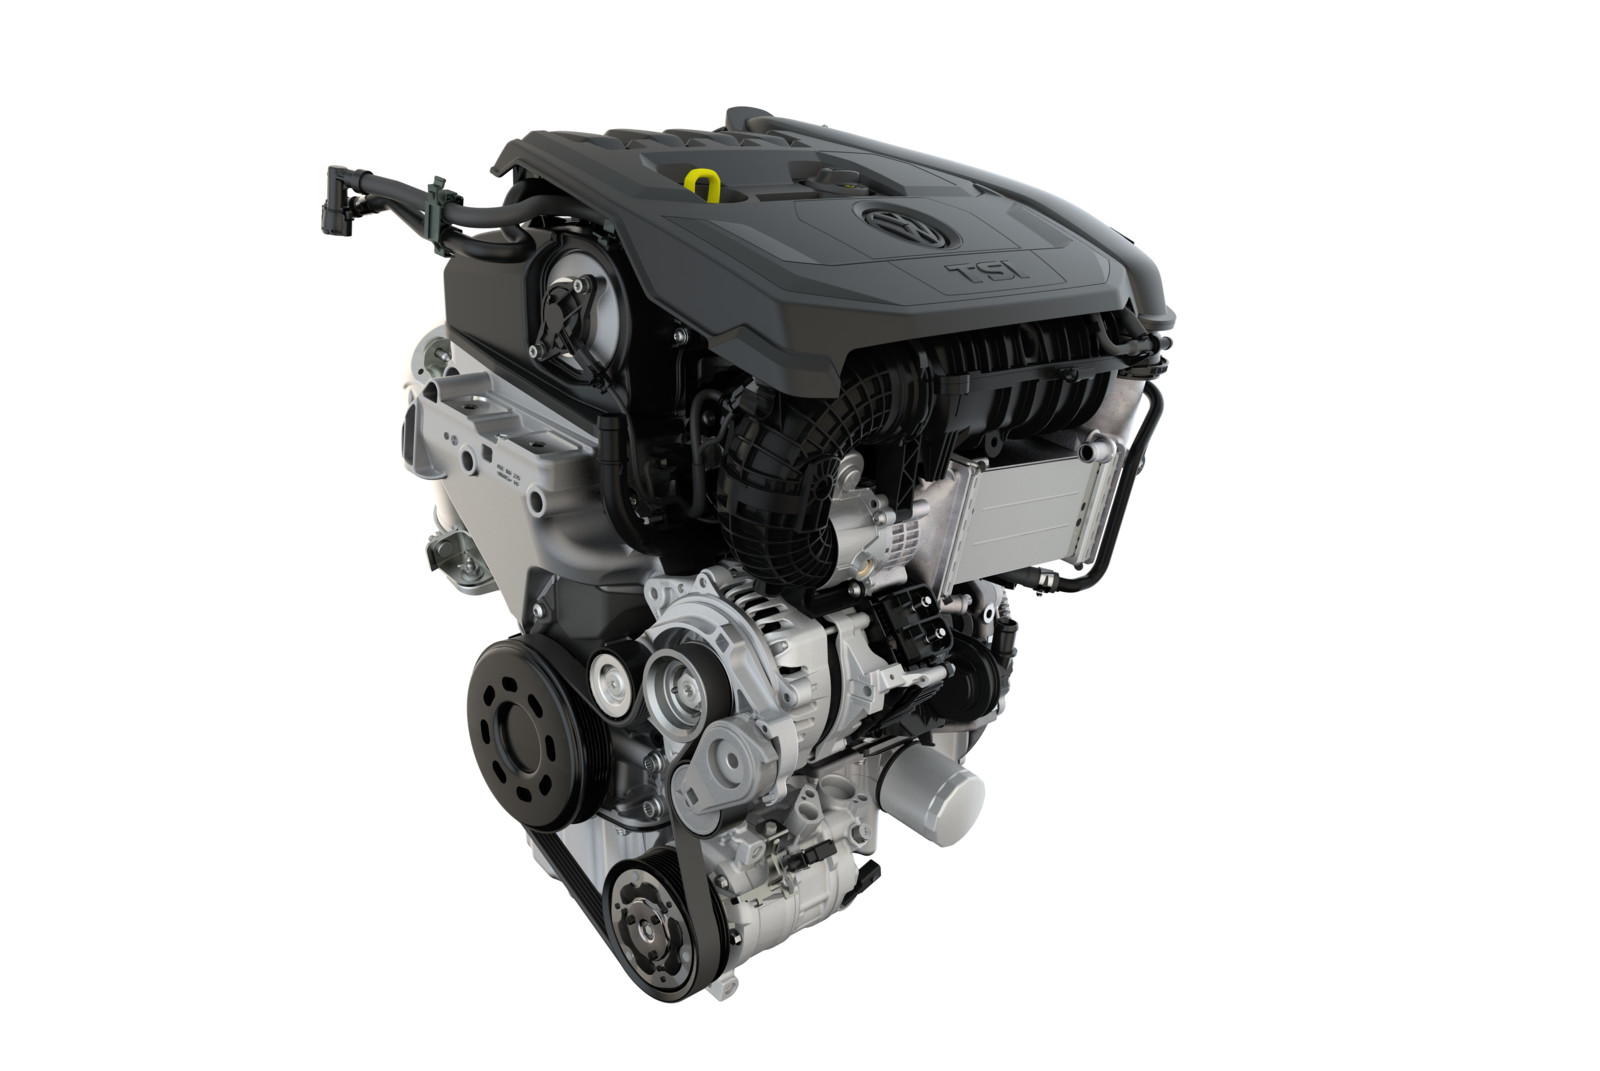 Dreizylindermotoren wie der 1.5 eTSI Motor mit  110kW / 150 PS habe sich zum neuen „Standard“ entwickelt und verdrängen den Vierzylinder.